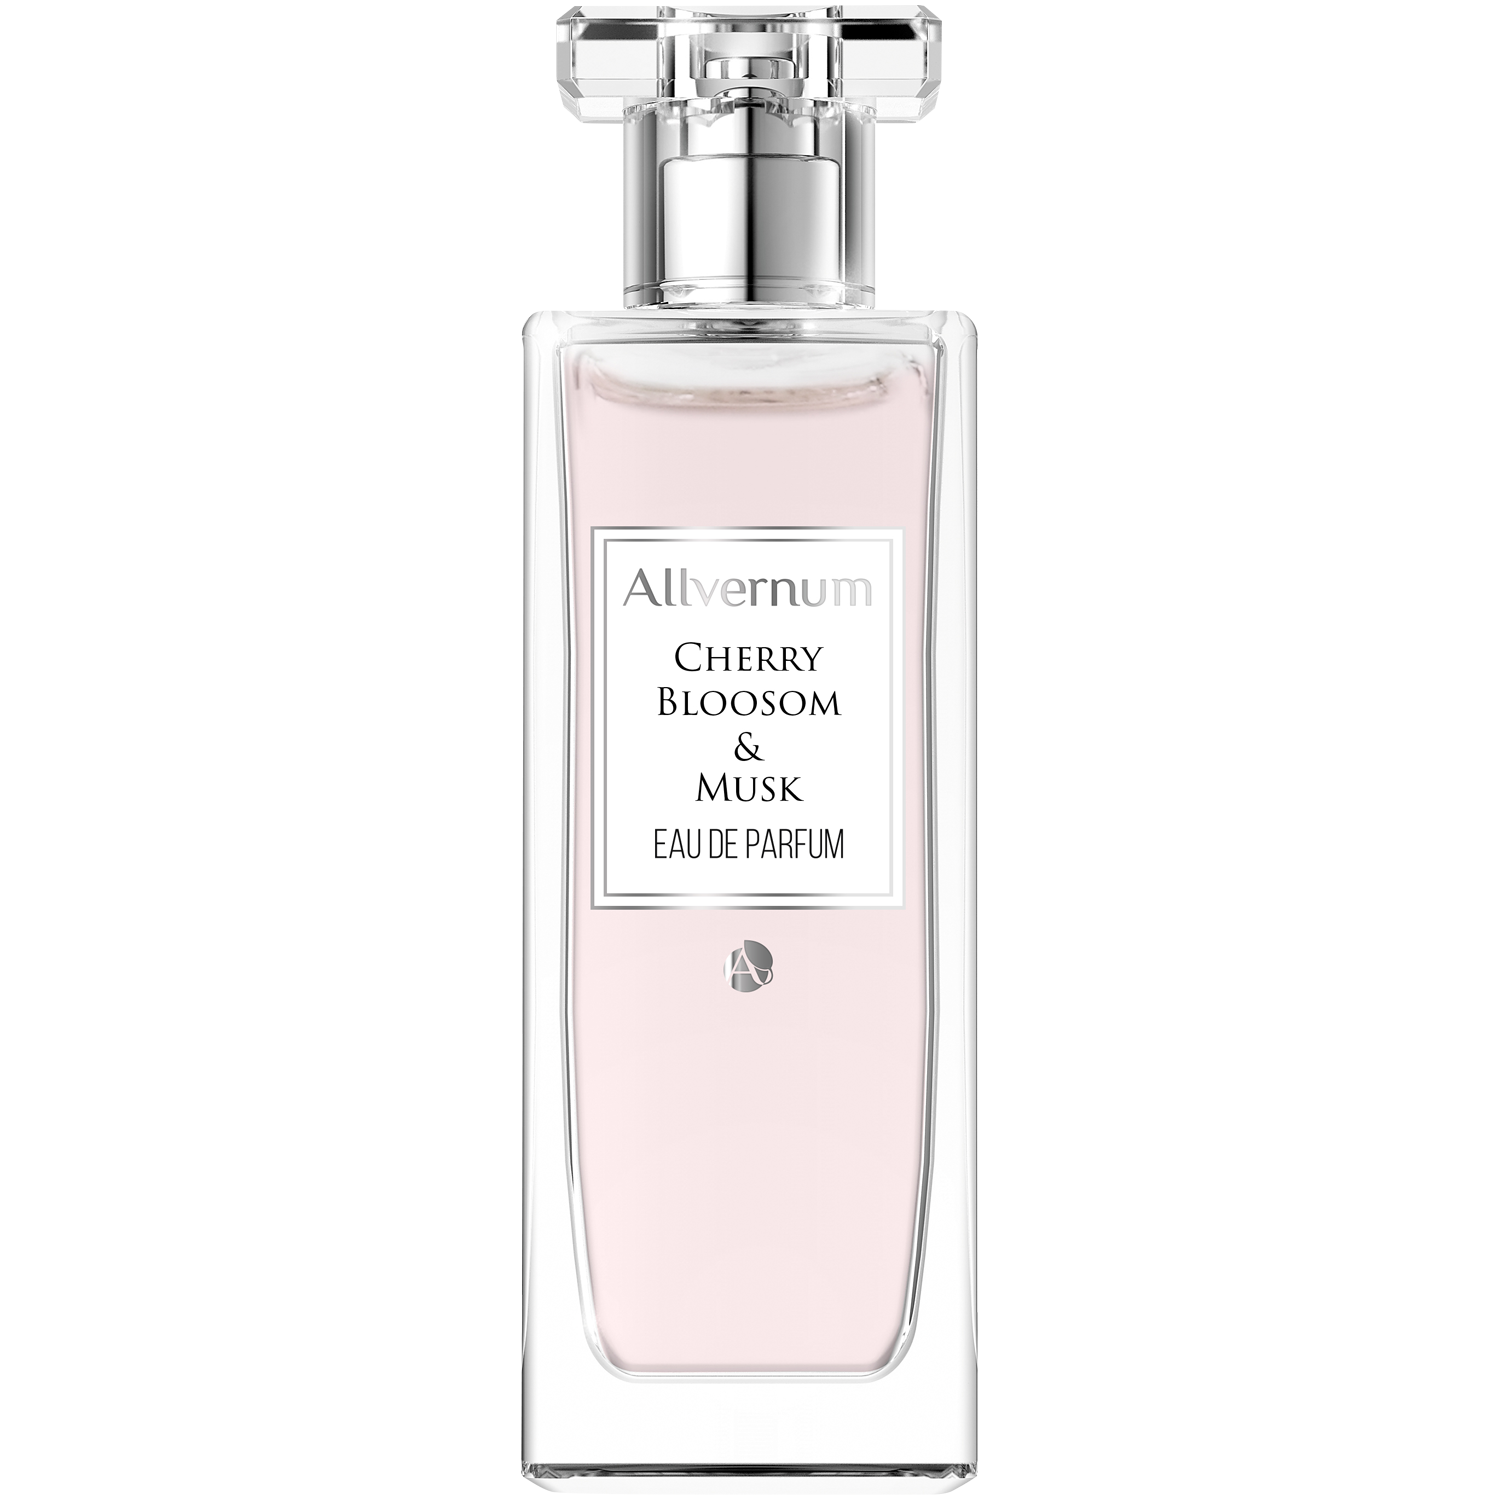 Allvernum Cherry Blossom & Musk парфюмерная вода для женщин, 50 мл